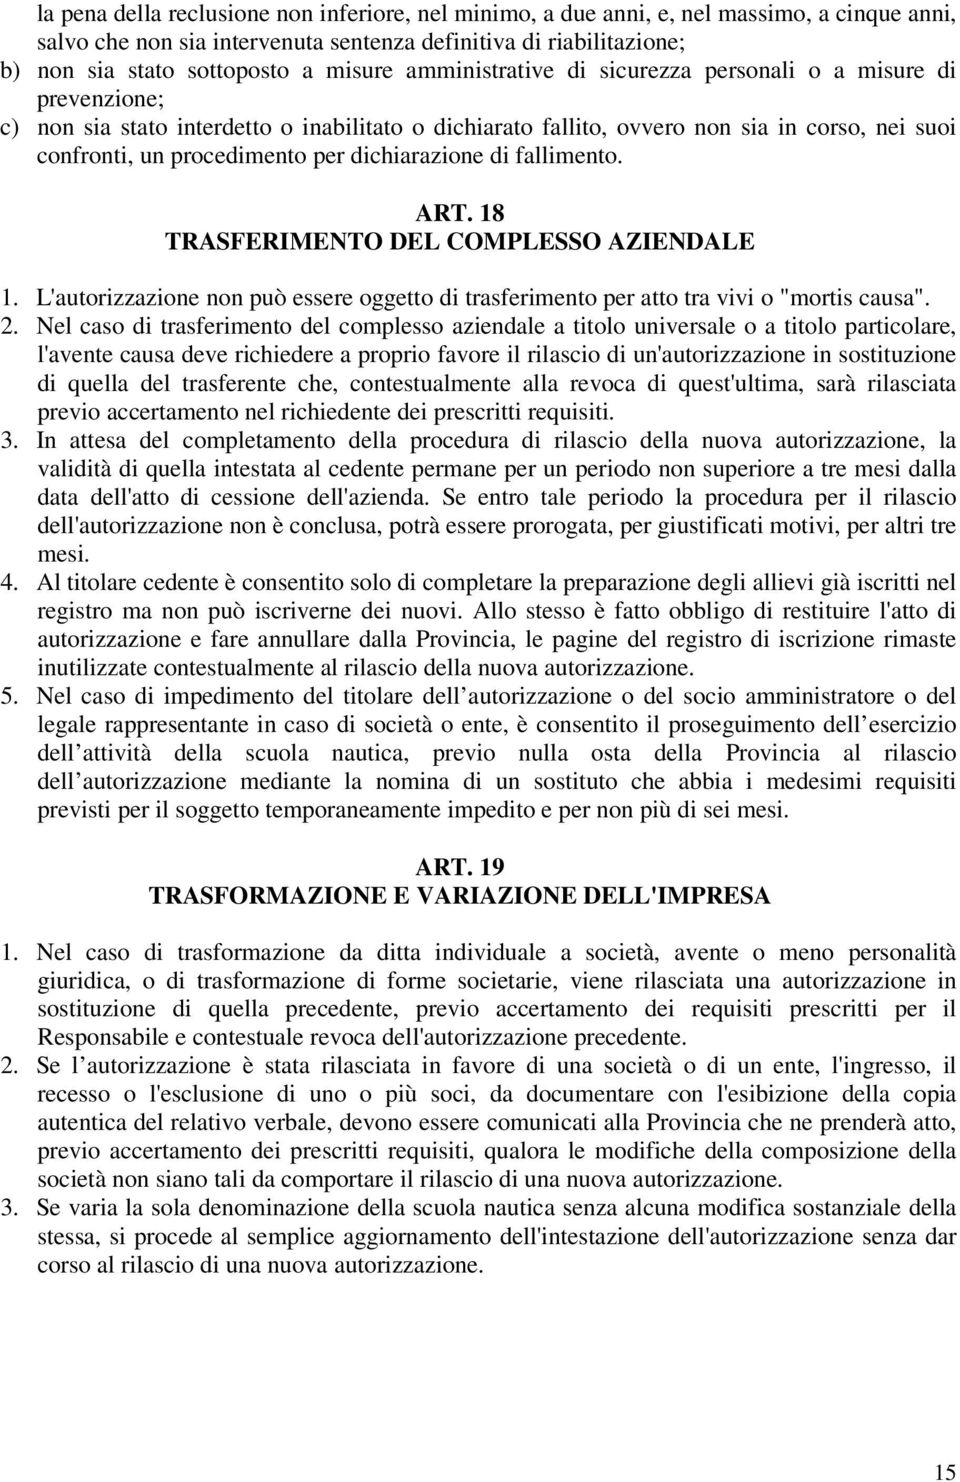 per dichiarazione di fallimento. ART. 18 TRASFERIMENTO DEL COMPLESSO AZIENDALE 1. L'autorizzazione non può essere oggetto di trasferimento per atto tra vivi o "mortis causa". 2.